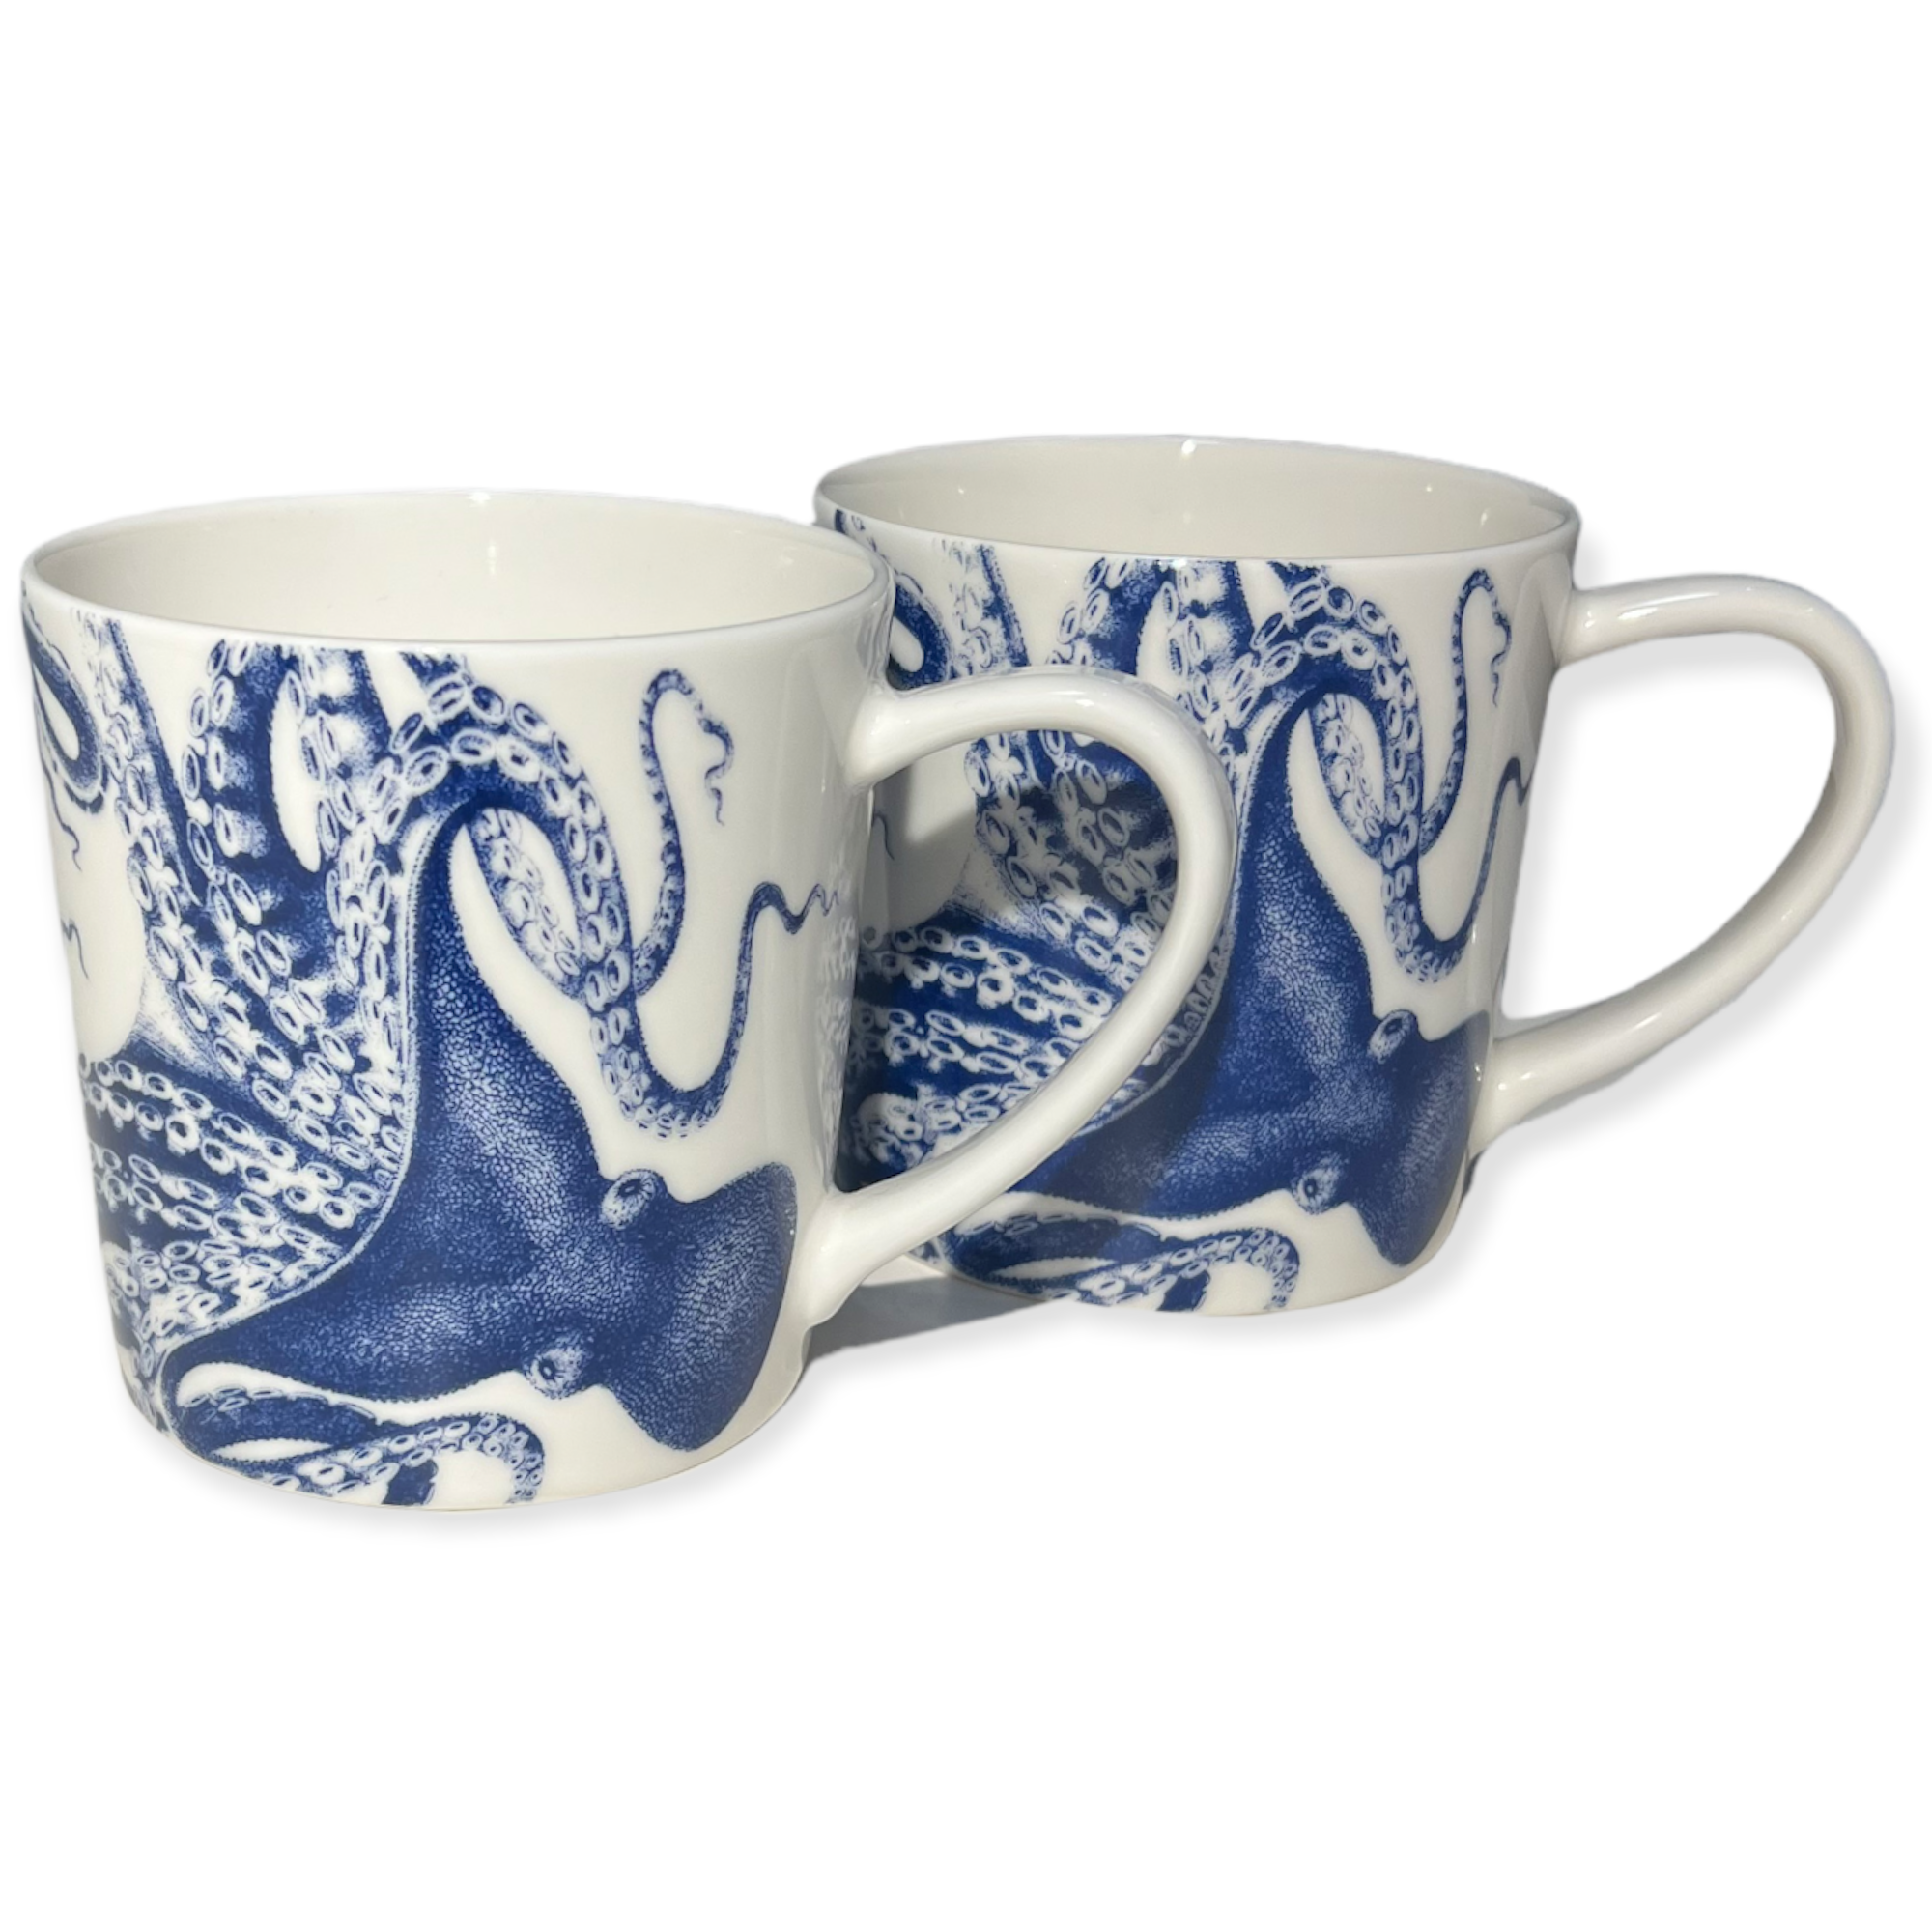 Blue Lucy Octopus Kraken Caskata Mug Set of 2 (pair) Timothy De Clue Collection 